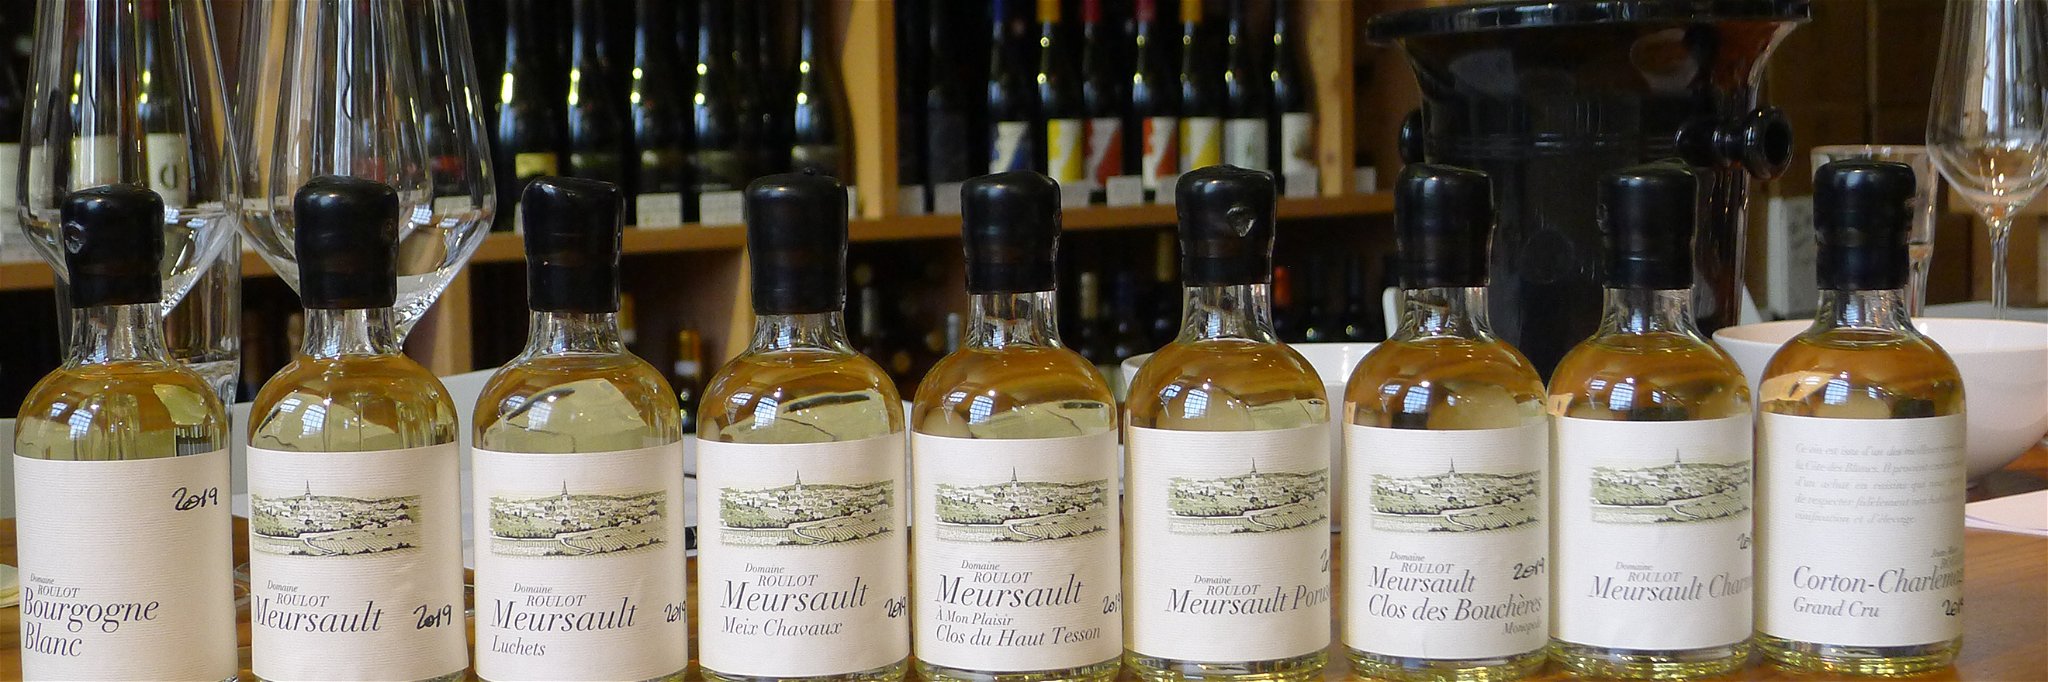 Der Flaschenpreis für die Premier Crus aus Meursault beträgt 300 bis 400 Euro.